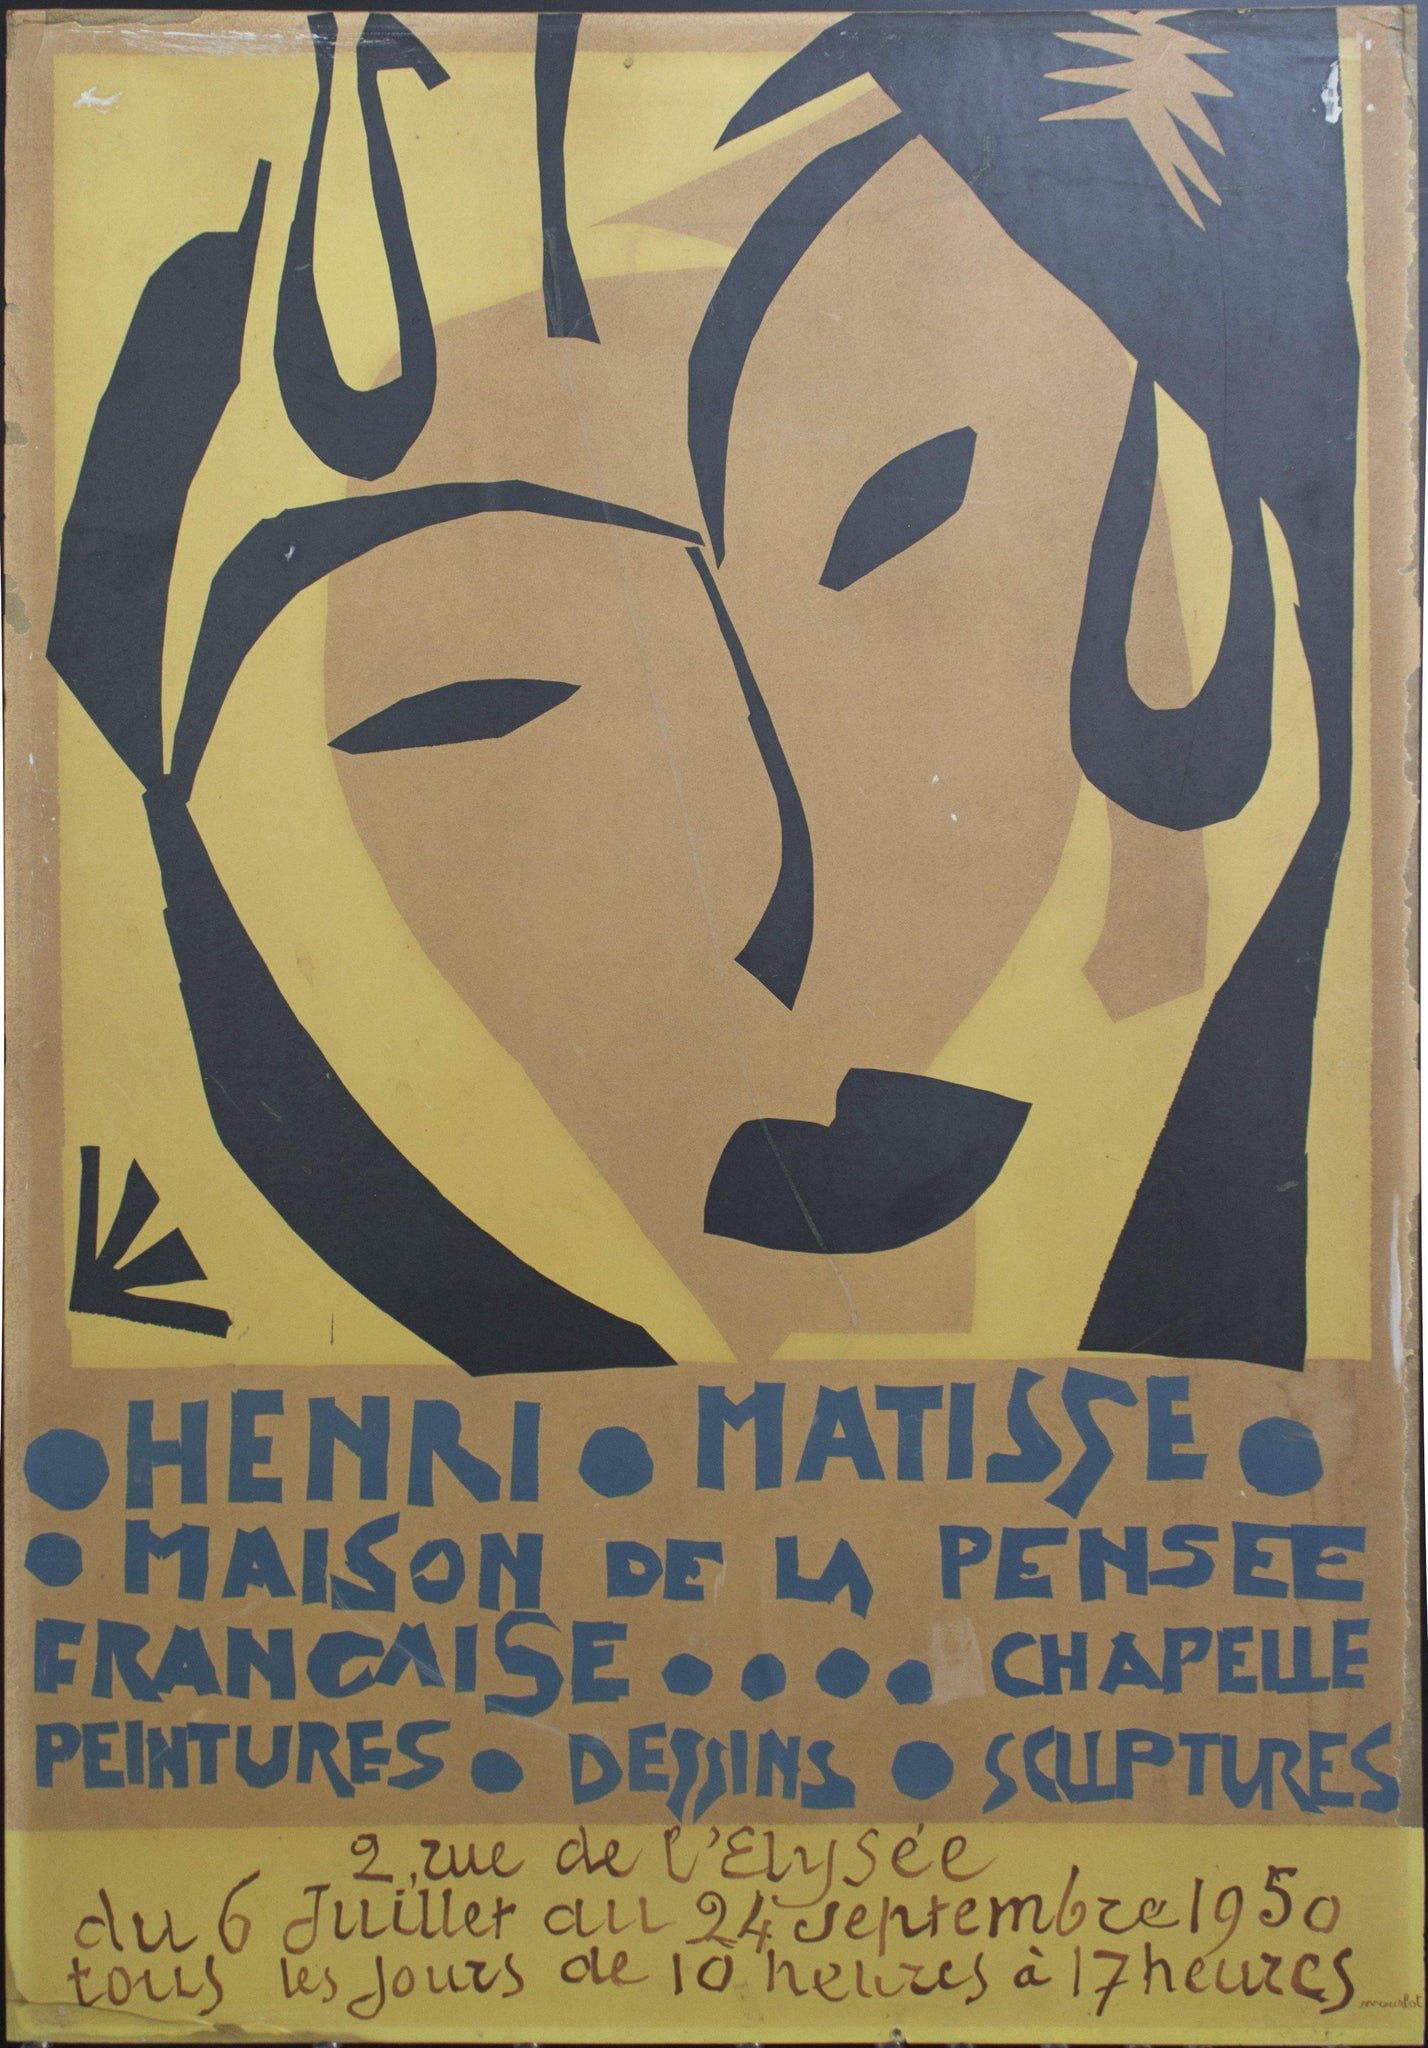 1950 Henri Matisse Maison de la Pensee Francaise…. Chapelle Peintures Dessins Sculptures - Golden Age Posters